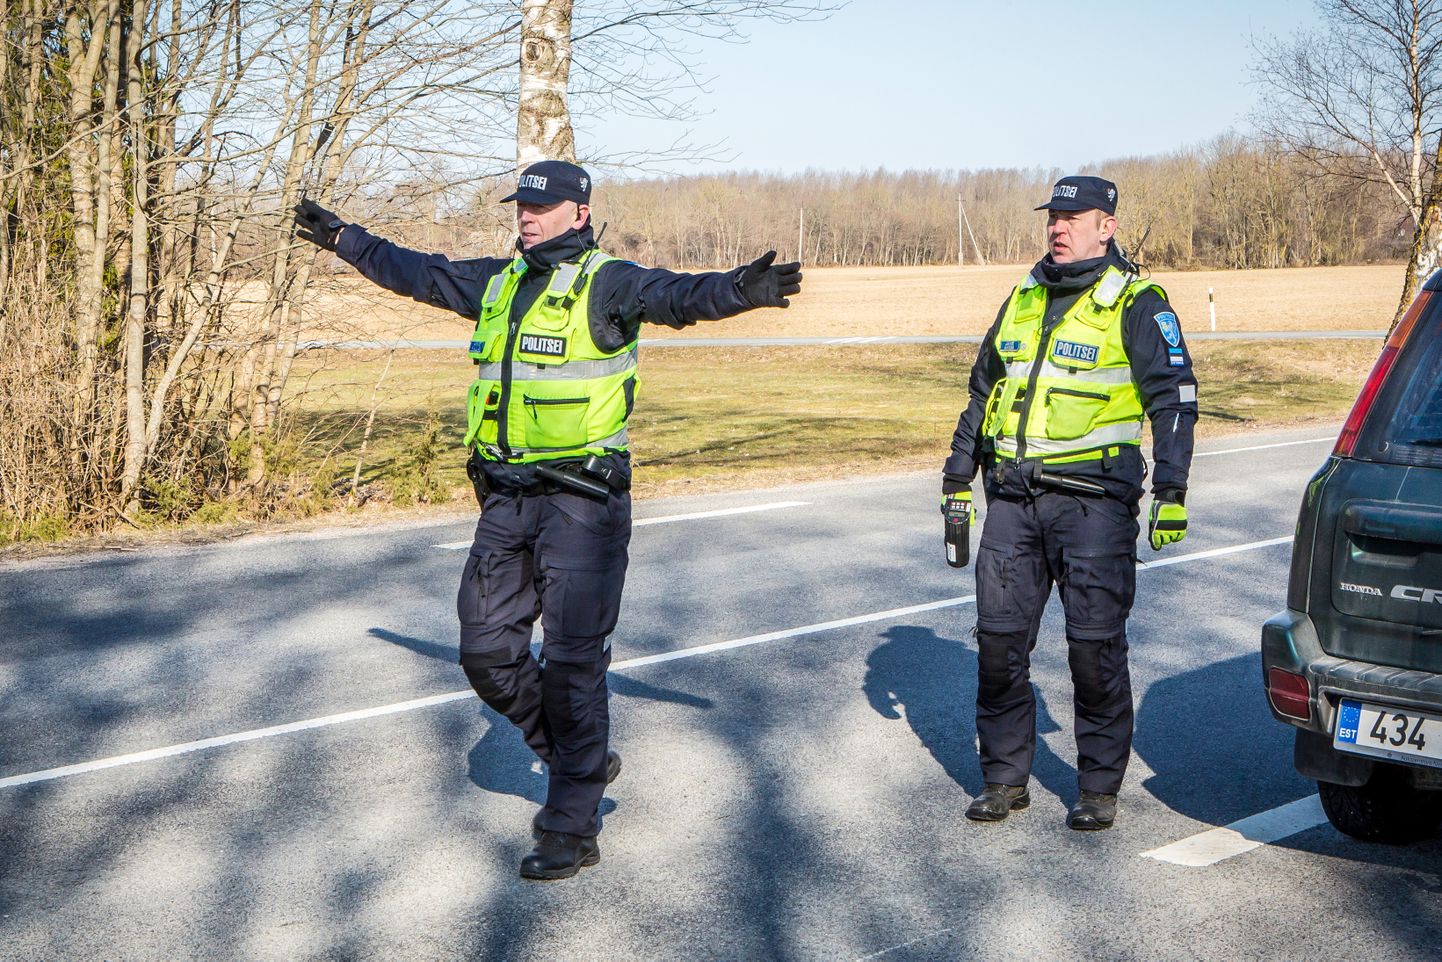 POLITSEINIKUD Arvet Kallas ja Janis Aksiim mõõdavad järjekordse läheneva auto kiirust ning seekord näitab ekraan 84 km/h. Juhiga vesteldakse ja kutsutakse ta politseiautosse. “See oli nüüd juba natuke liiga palju,” märgib Aksiim.